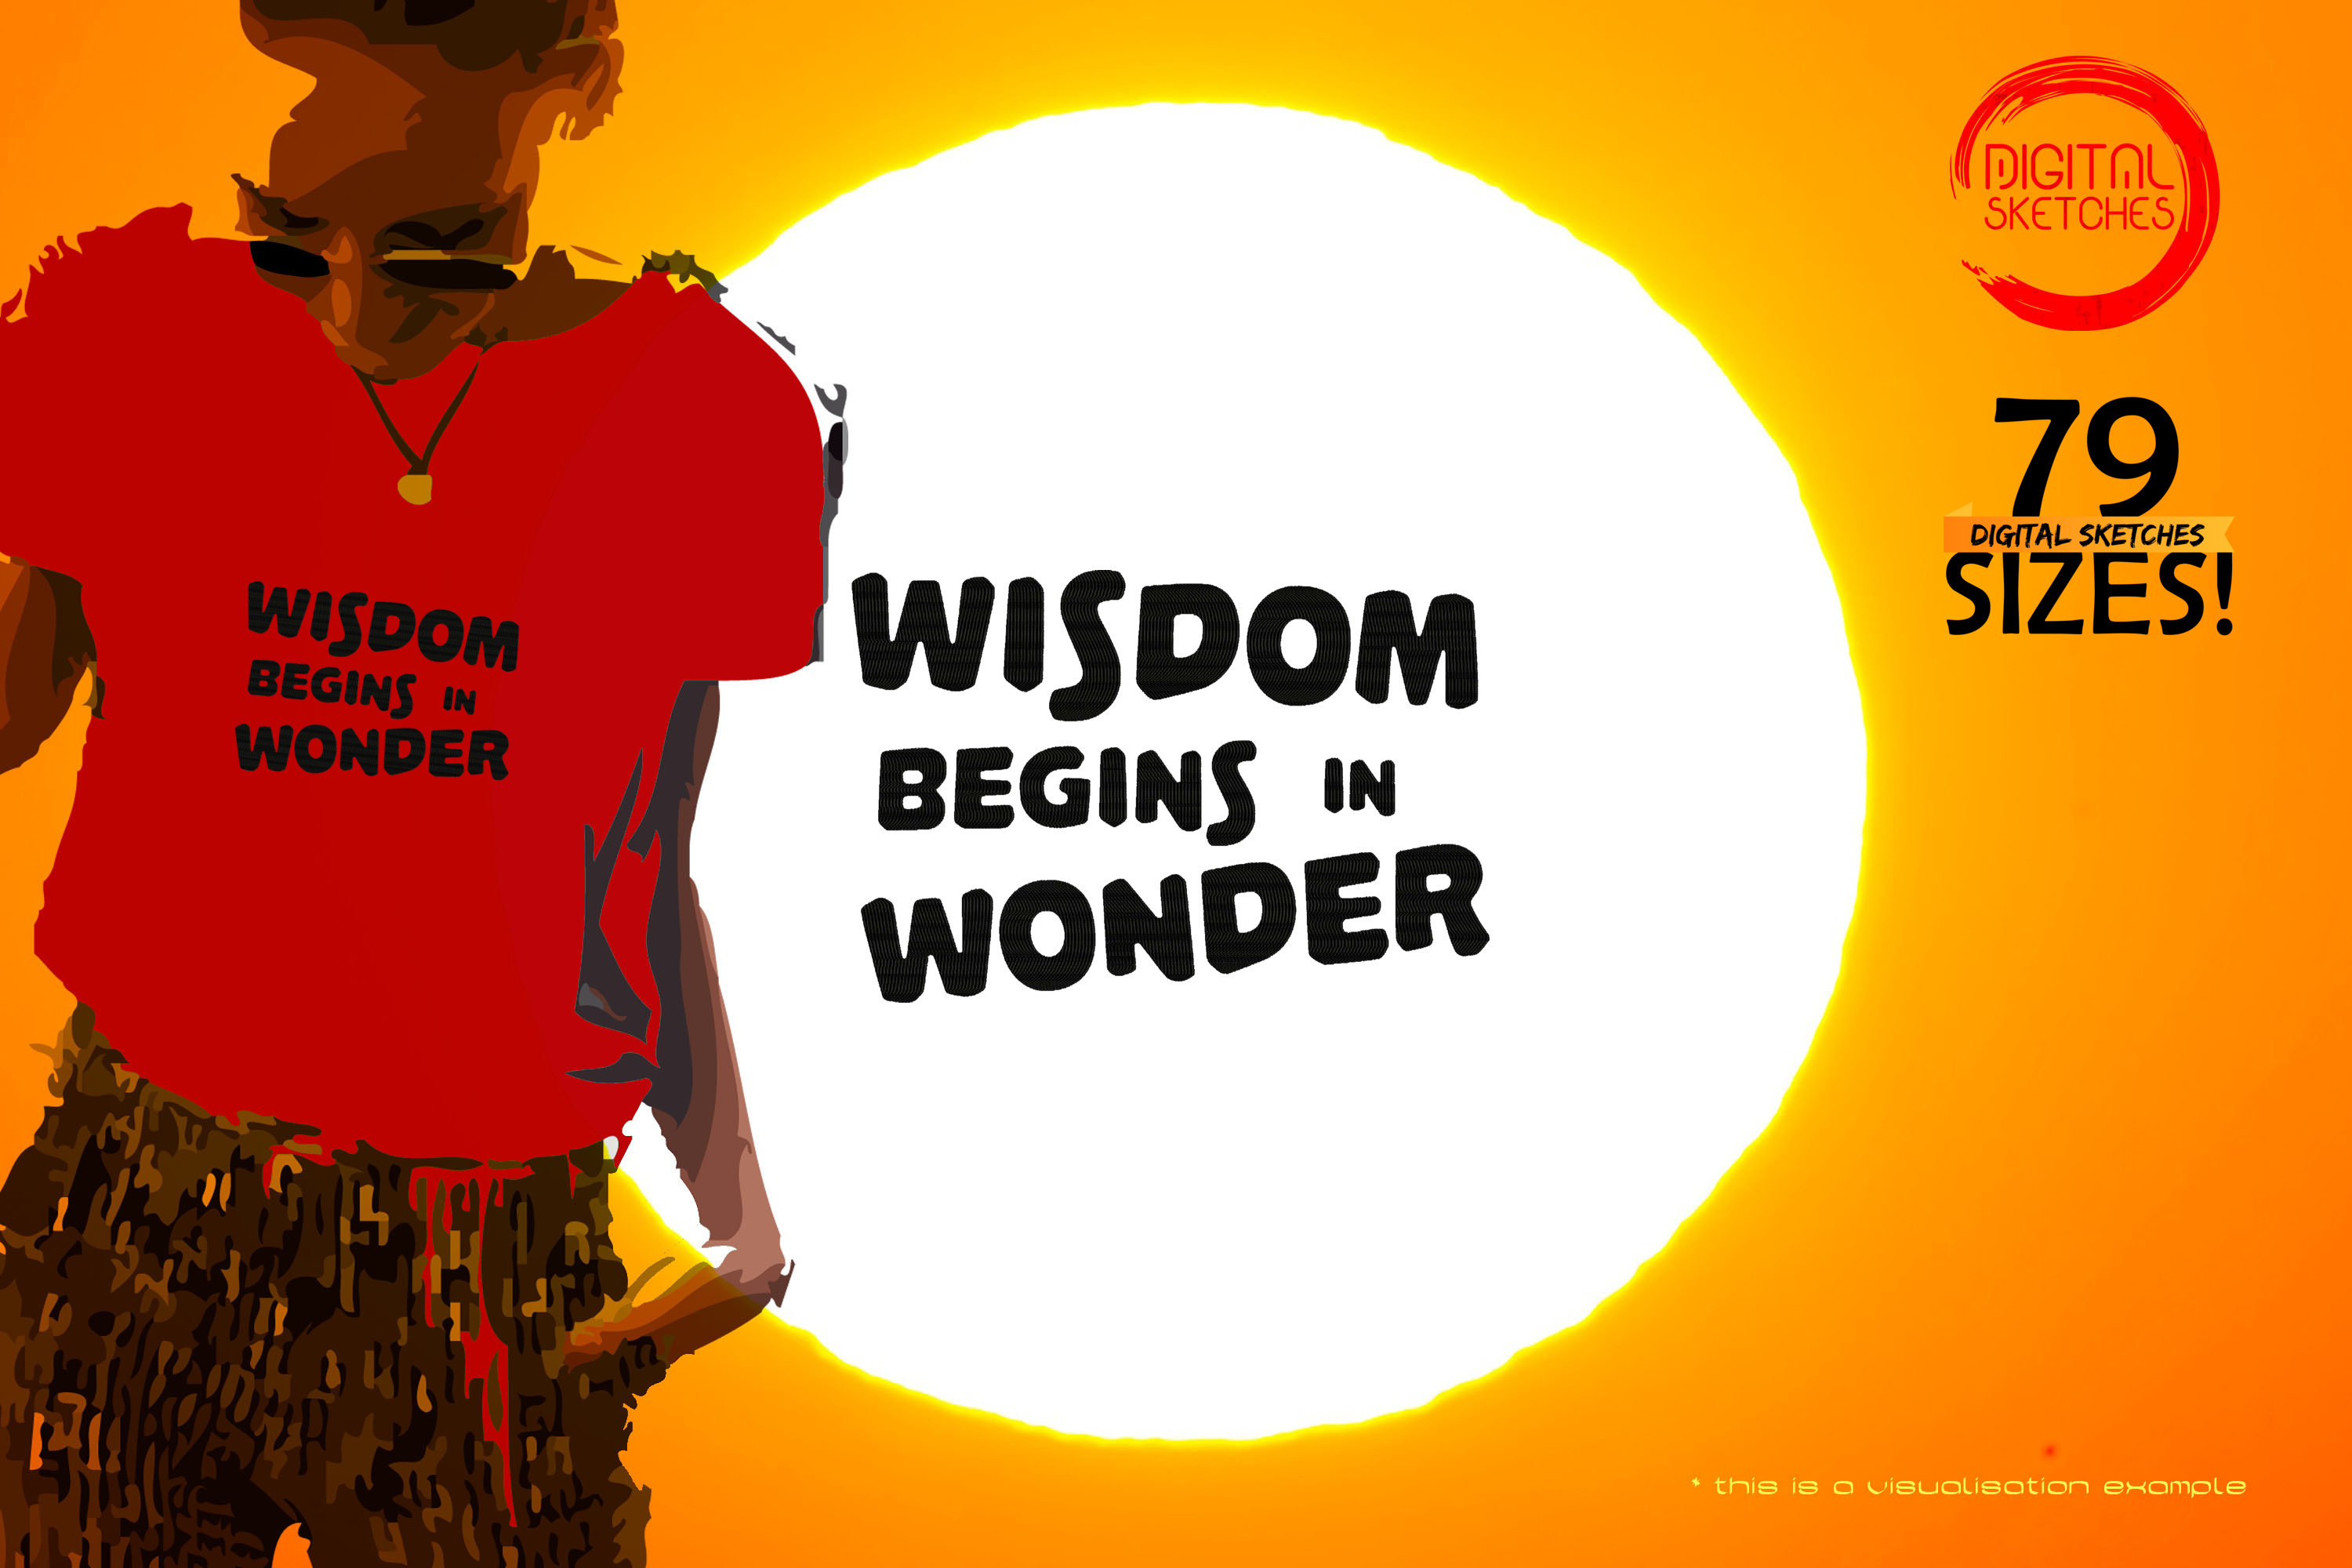 Wisdom Begins In Wonder